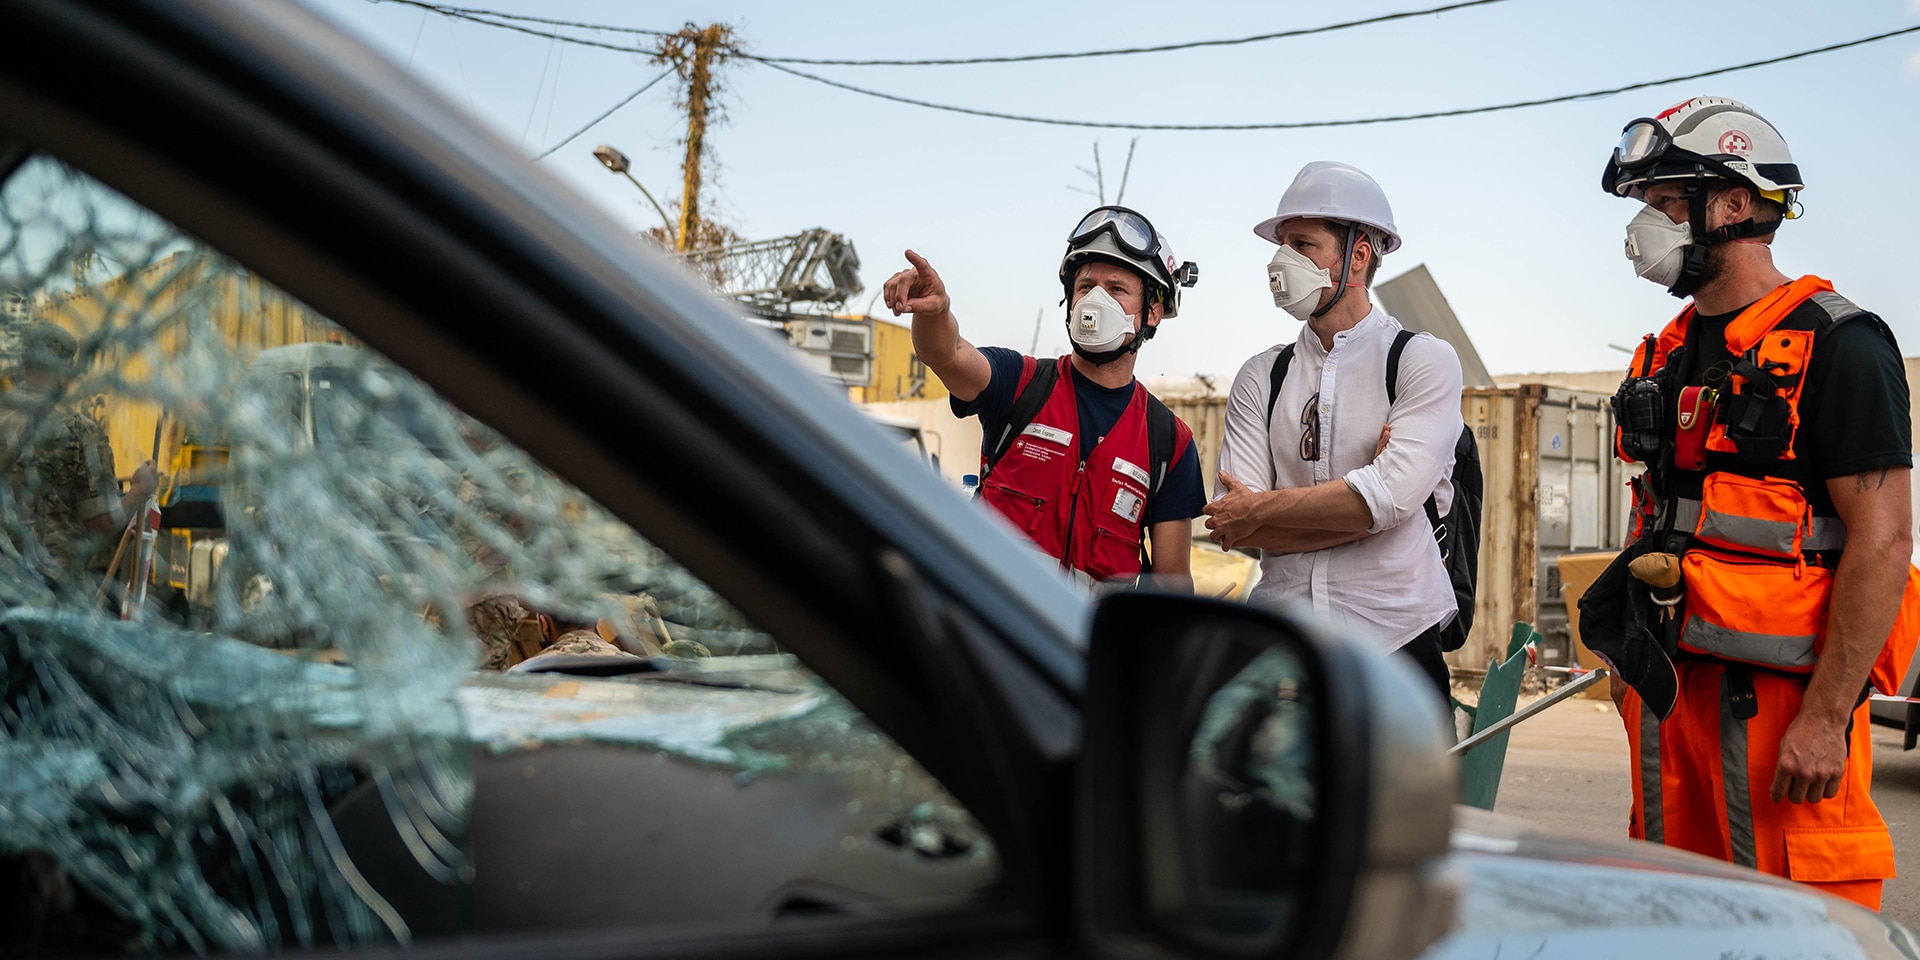 Tre esperti dell’Aiuto umanitario si trovano nei pressi di un’automobile distrutta.